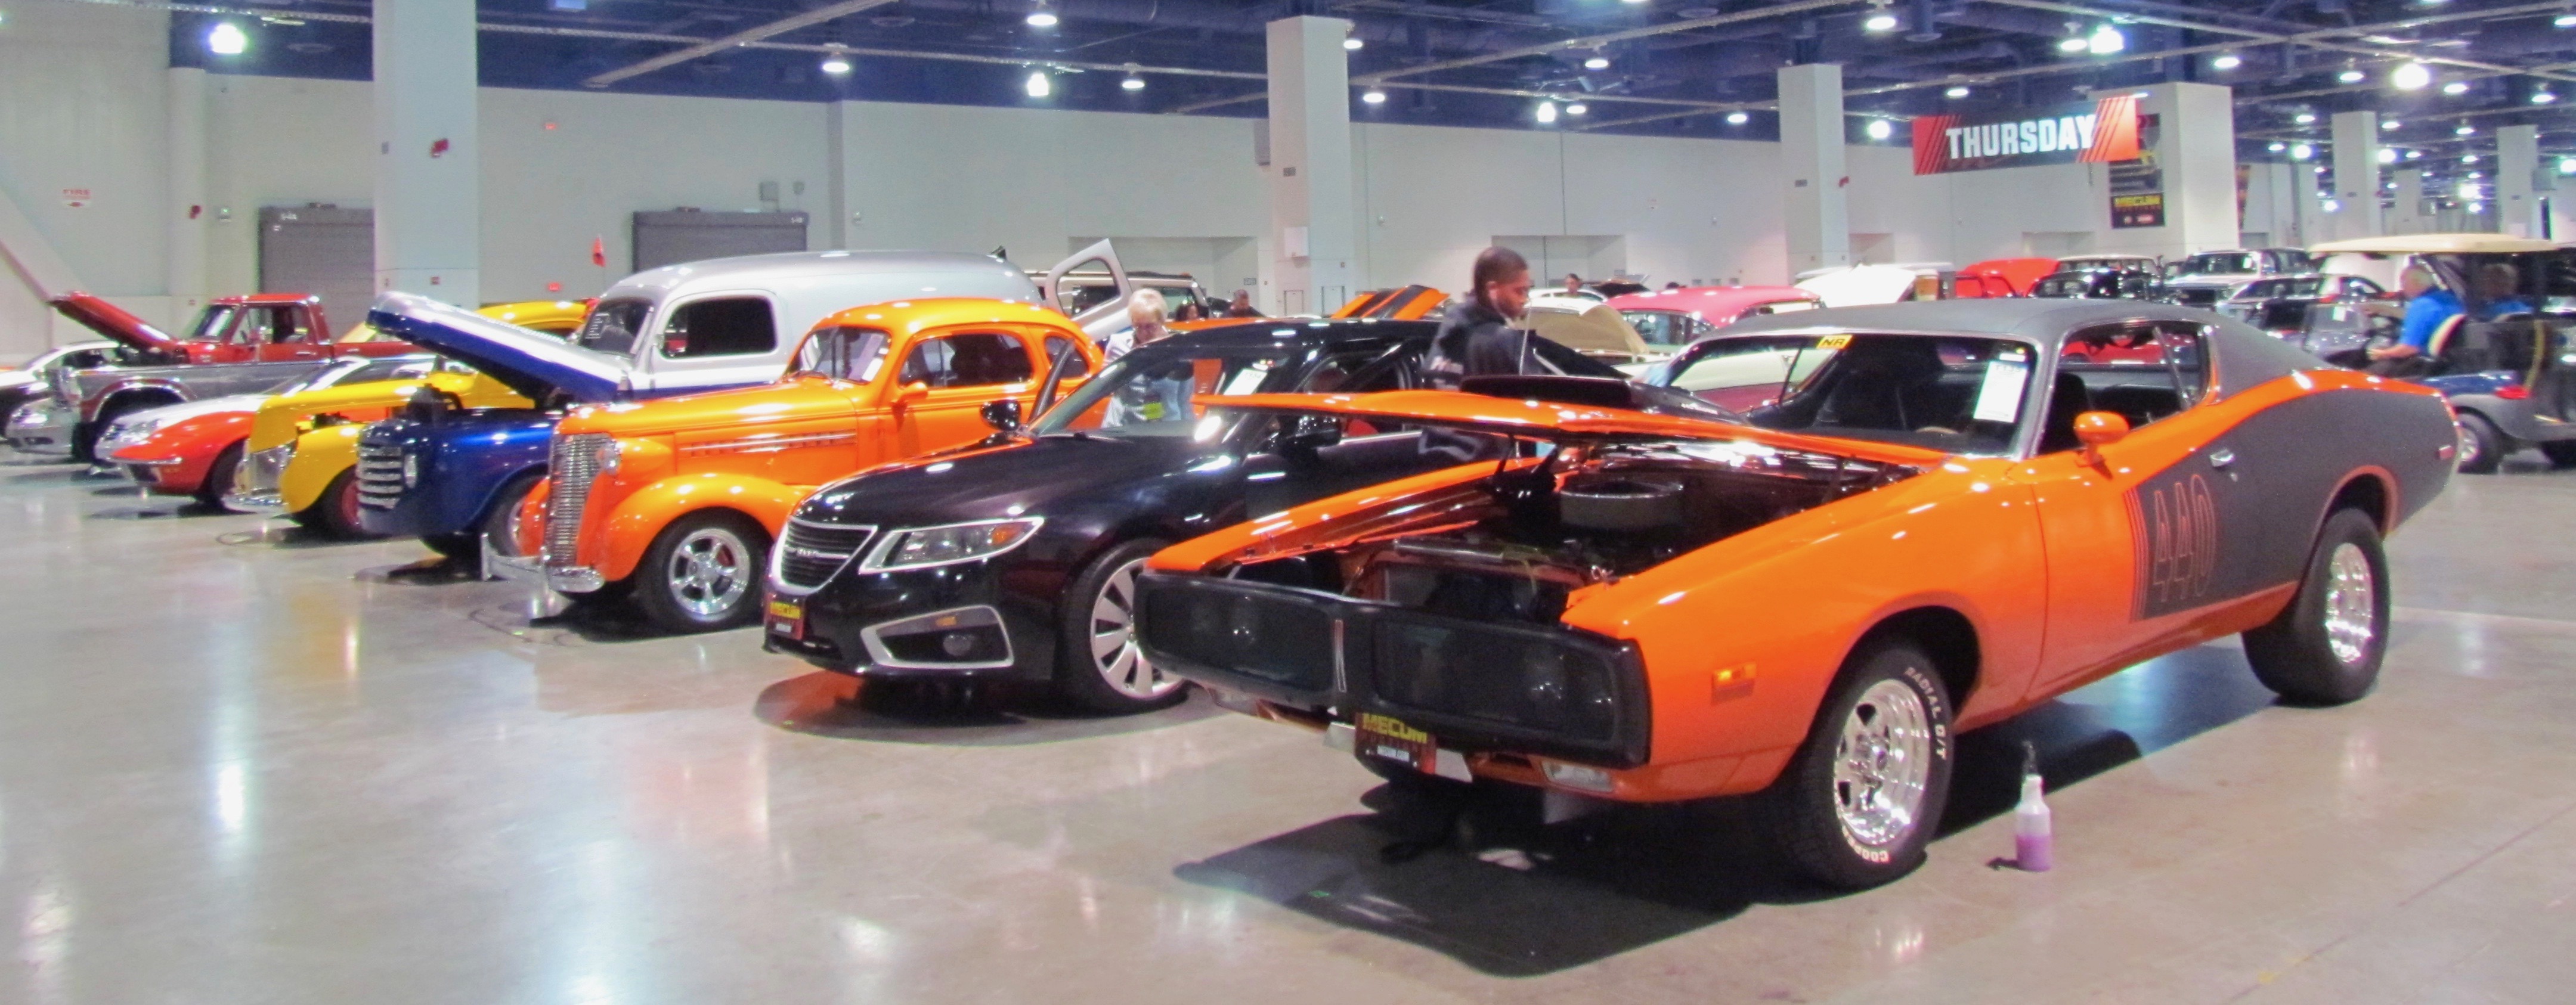 The hottest cars at Mecum’s Las Vegas auction | ClassicCars.com Journal 